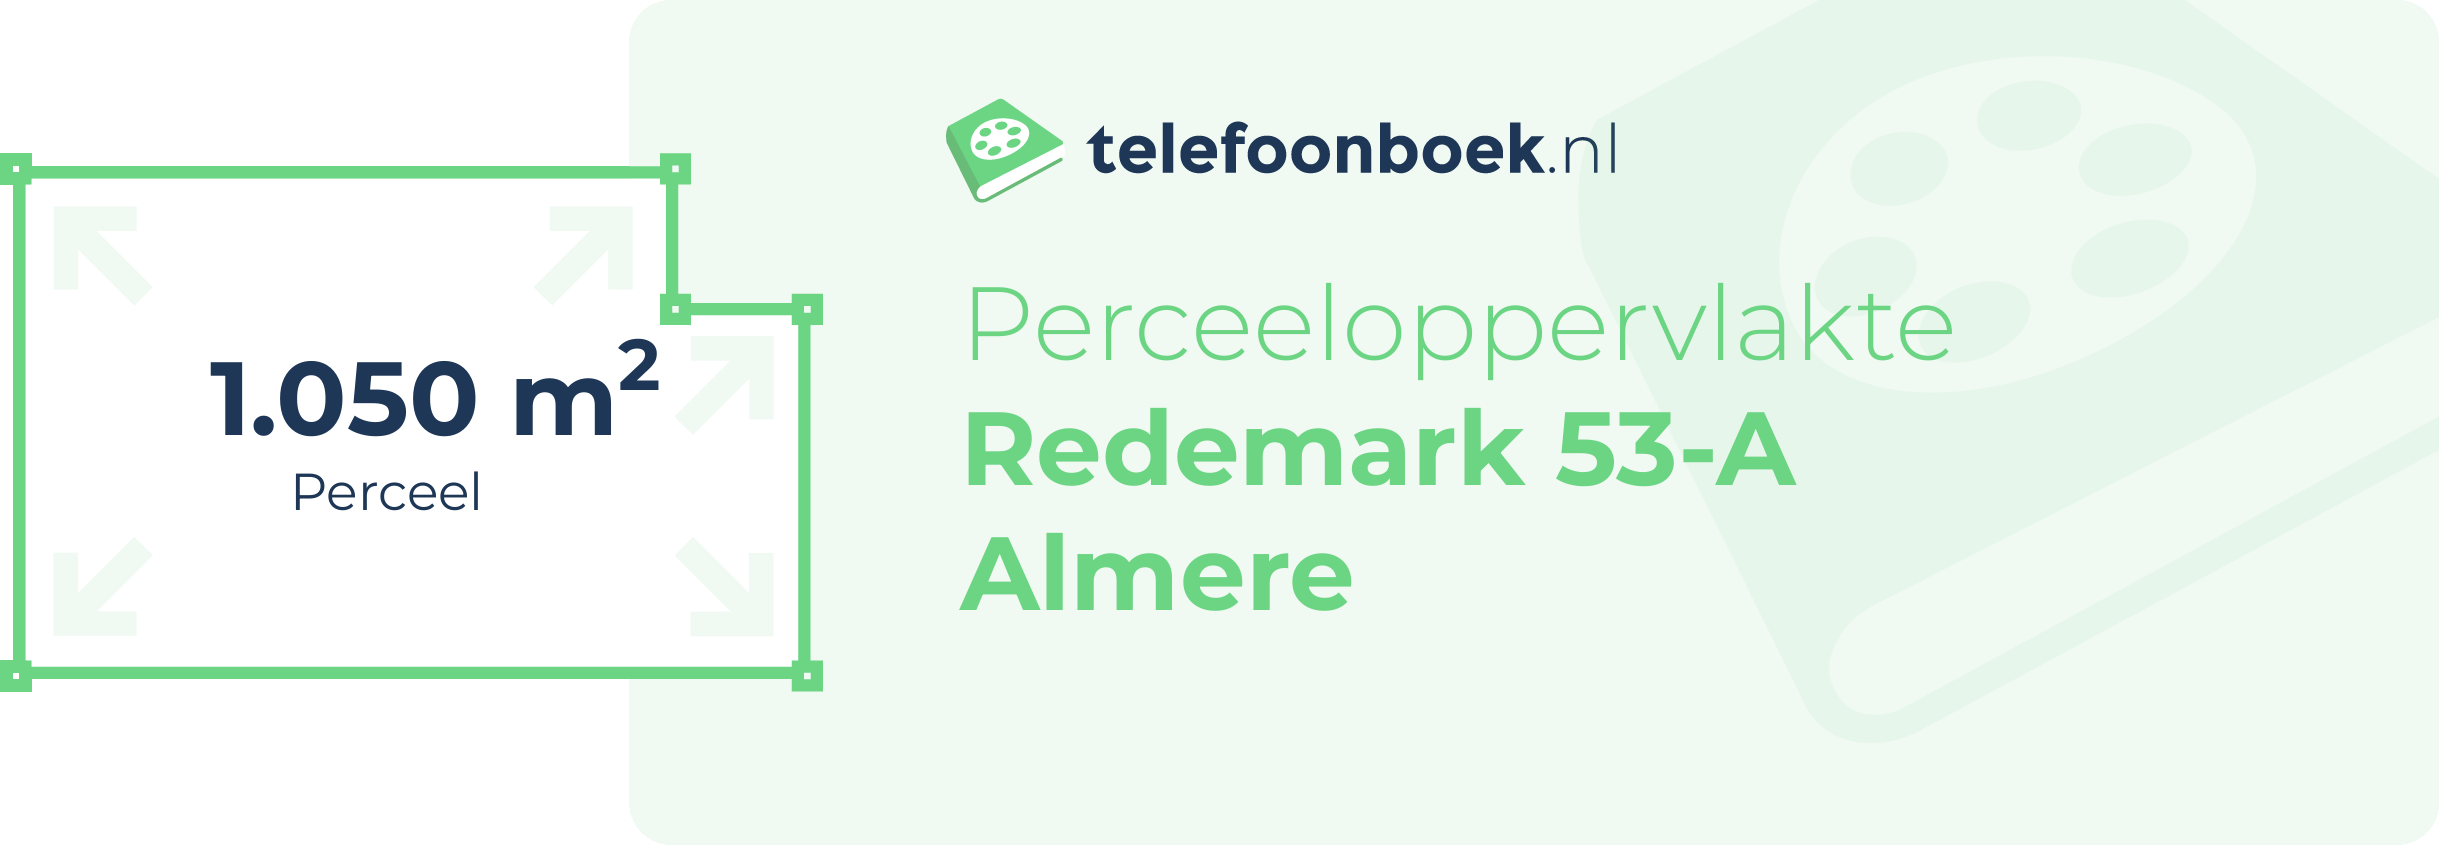 Perceeloppervlakte Redemark 53-A Almere